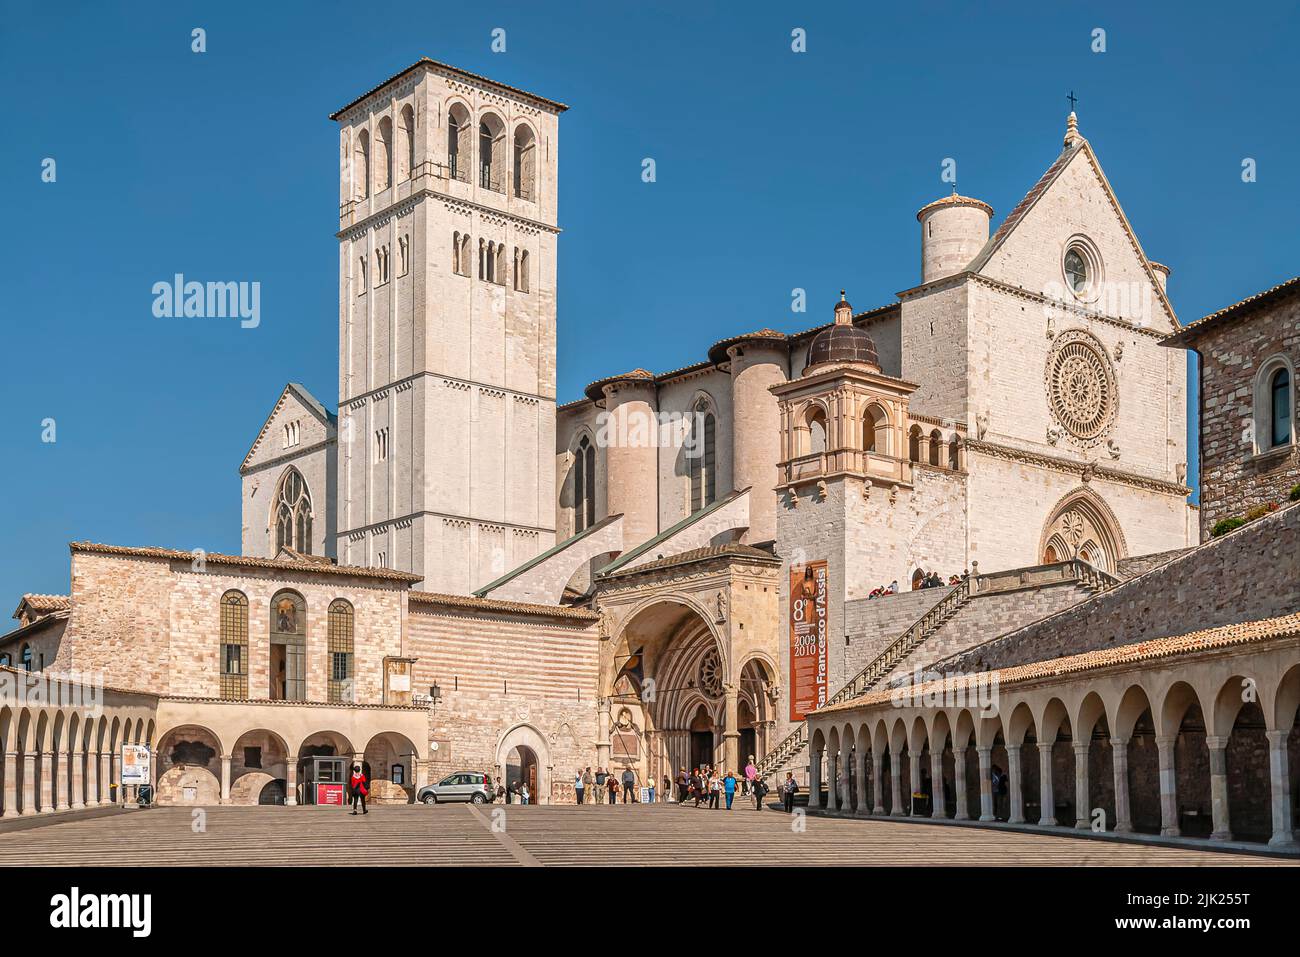 Basilica di San Francesco d'Assisi, Assisi, Umbria, Italy Stock Photo